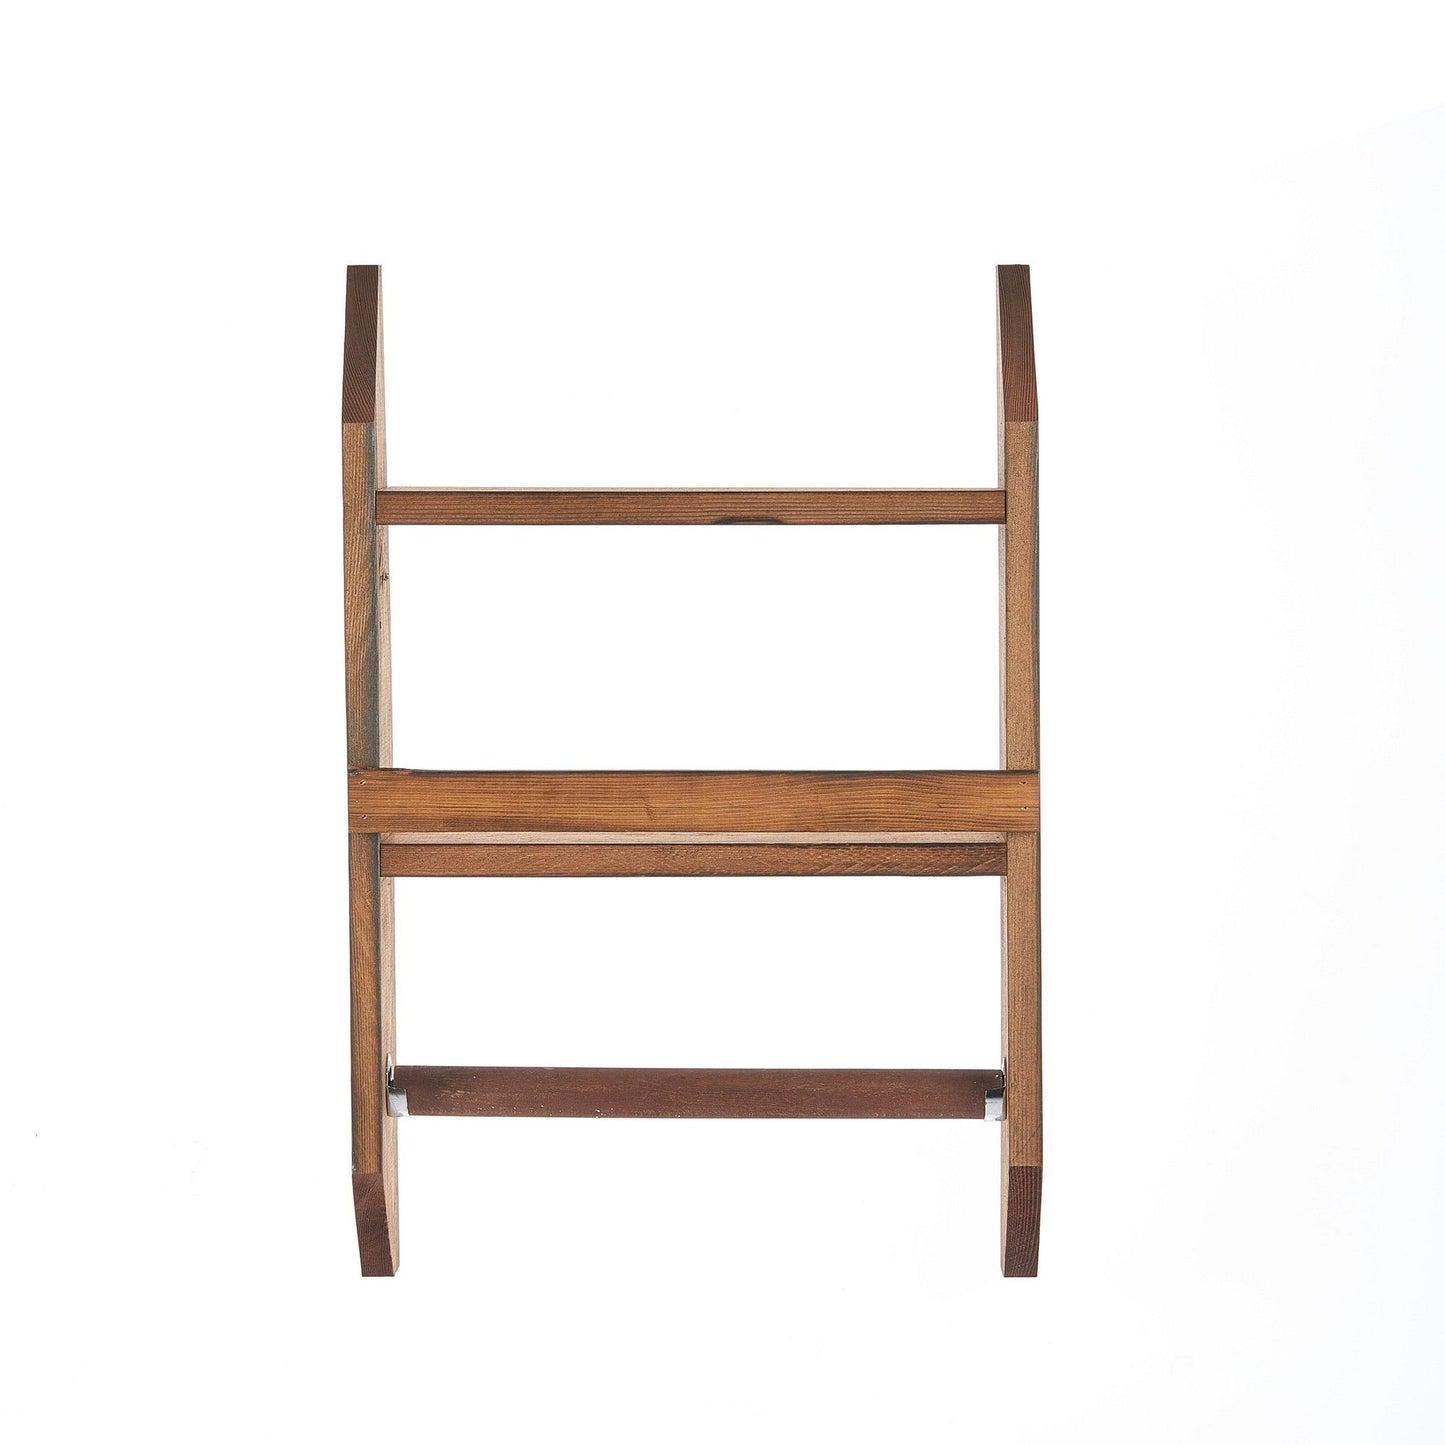 Spice Rack & Towel Hanger - Wooden Shelf